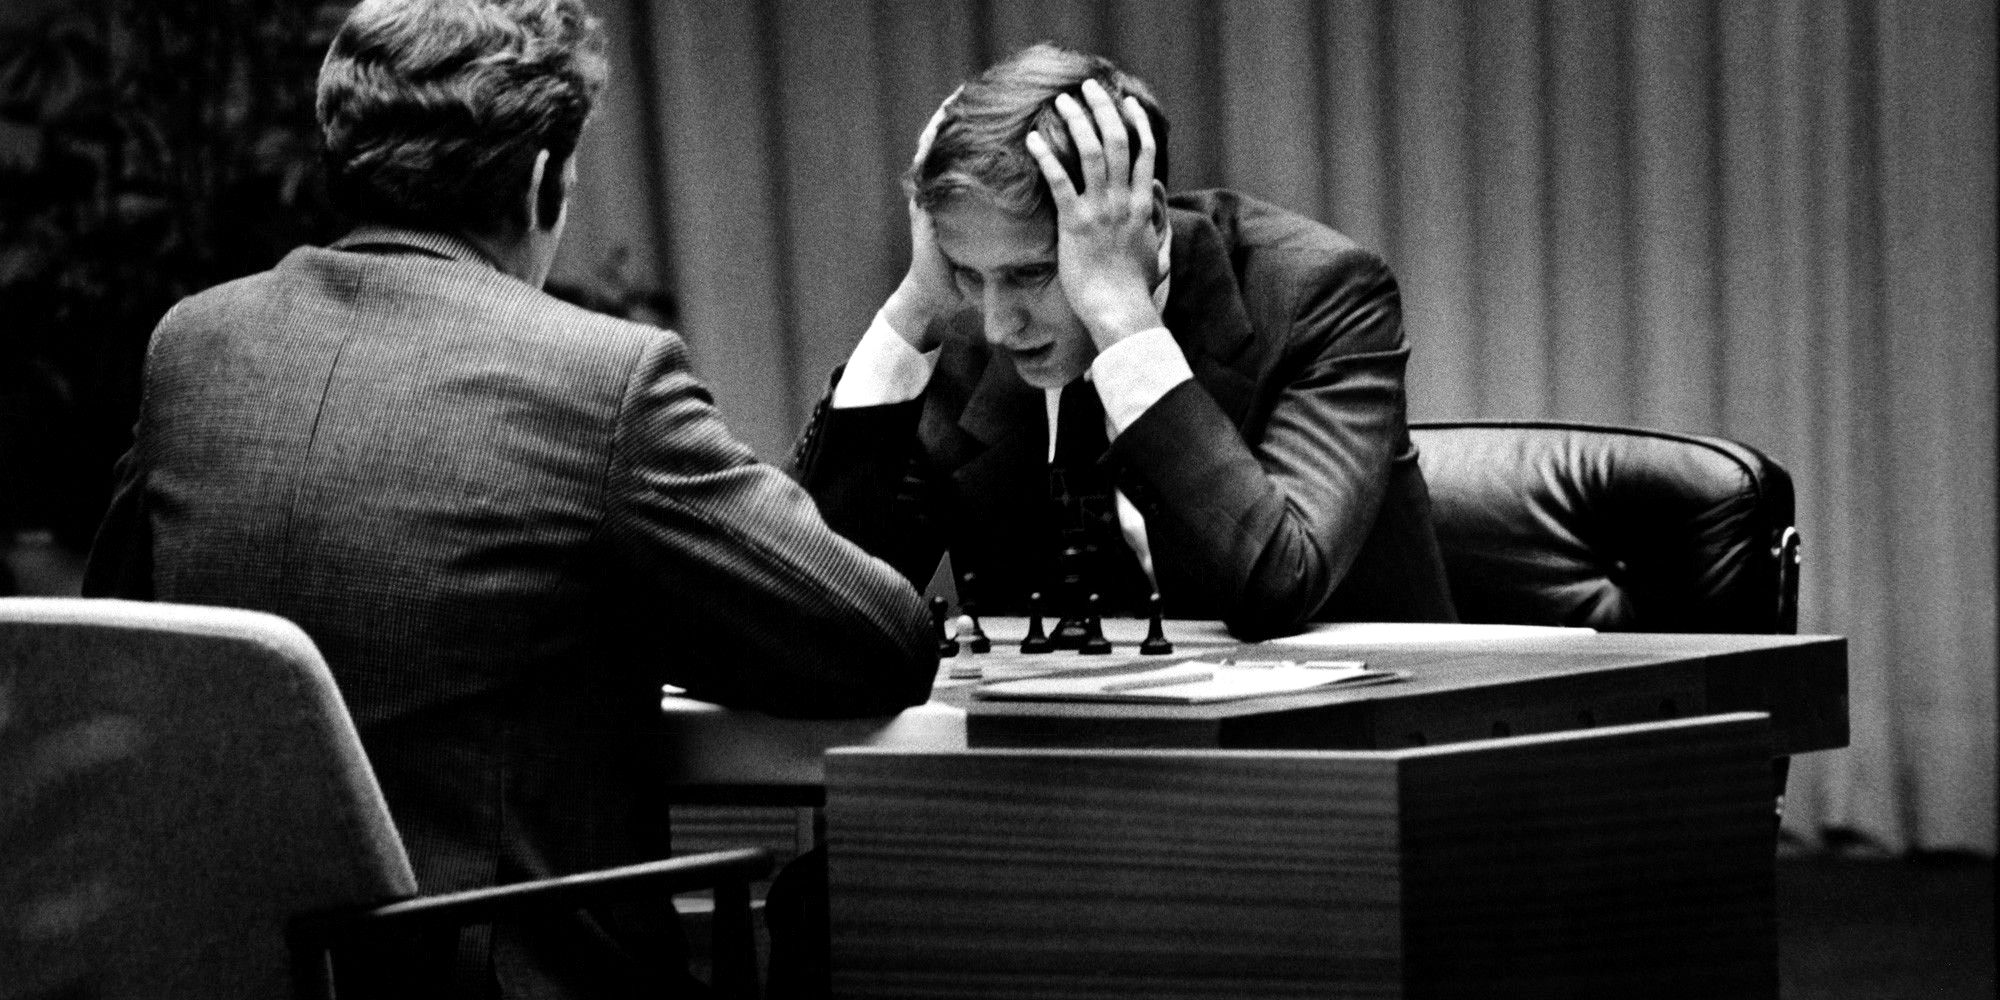 Fischer VS Spassky in an intense chess matchup